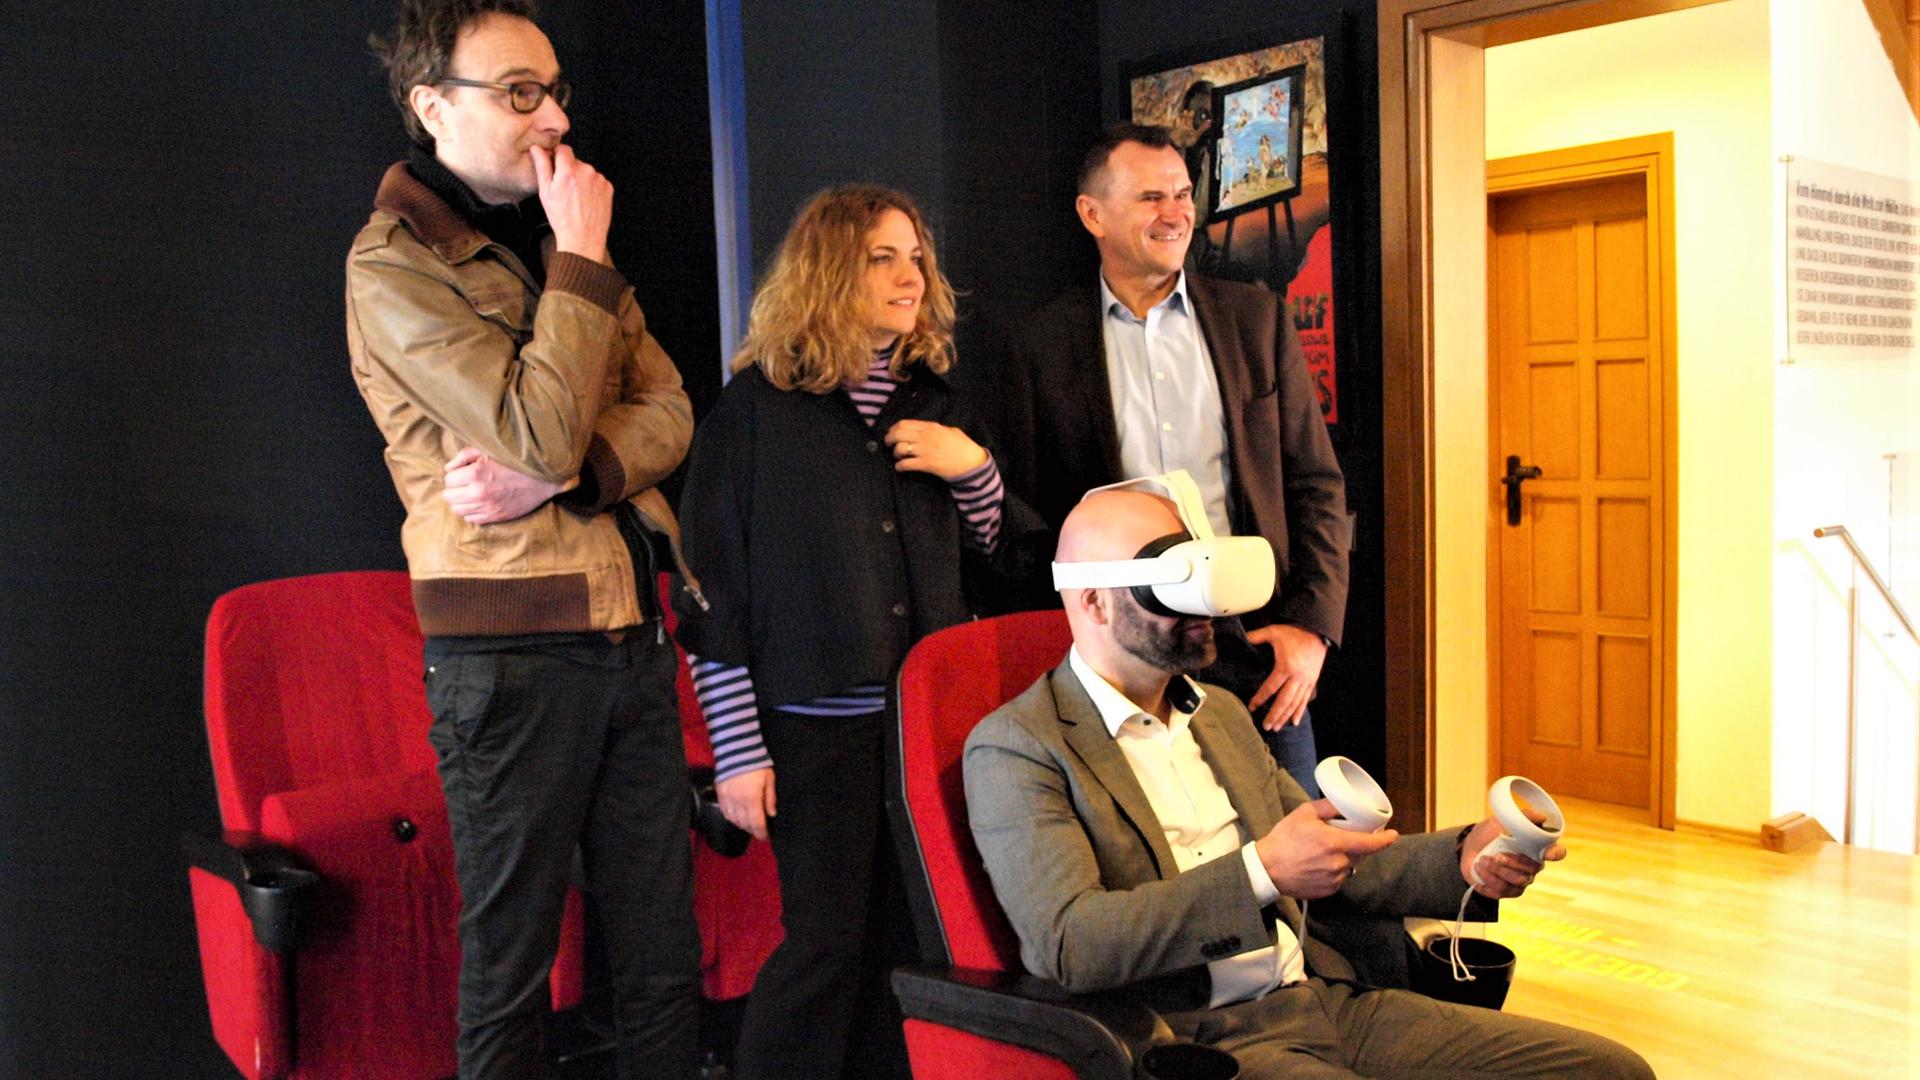 Die VR-Brille entführt in eine andere Welt, stellt Bürgermeister Kozel fest.